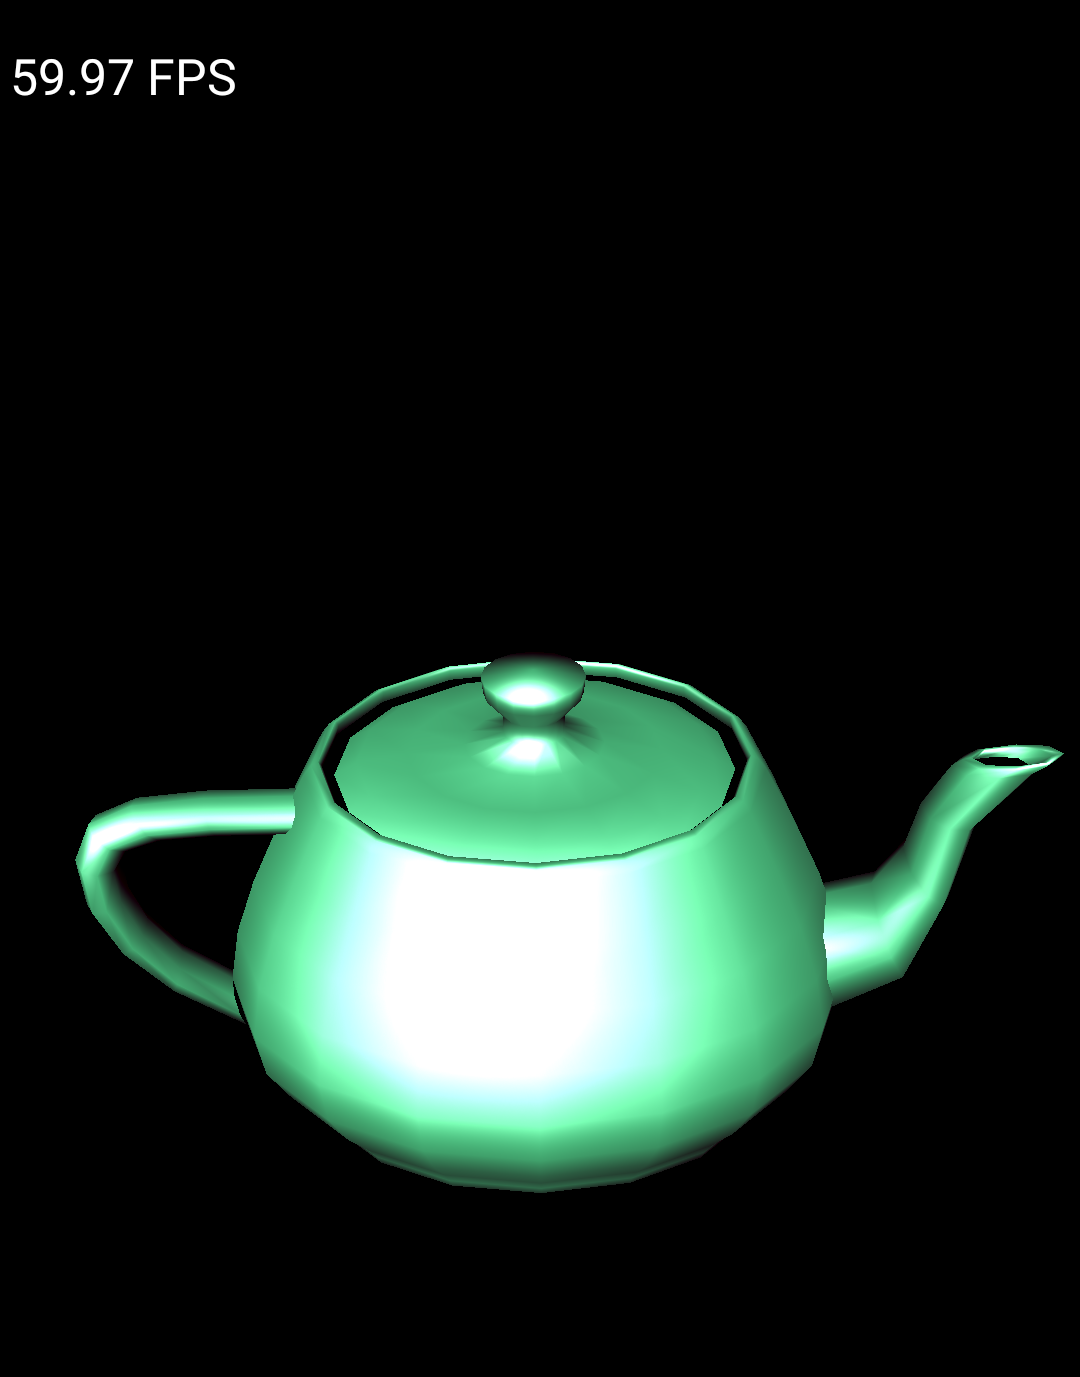 Exemplo do Teapot em execução em um emulador